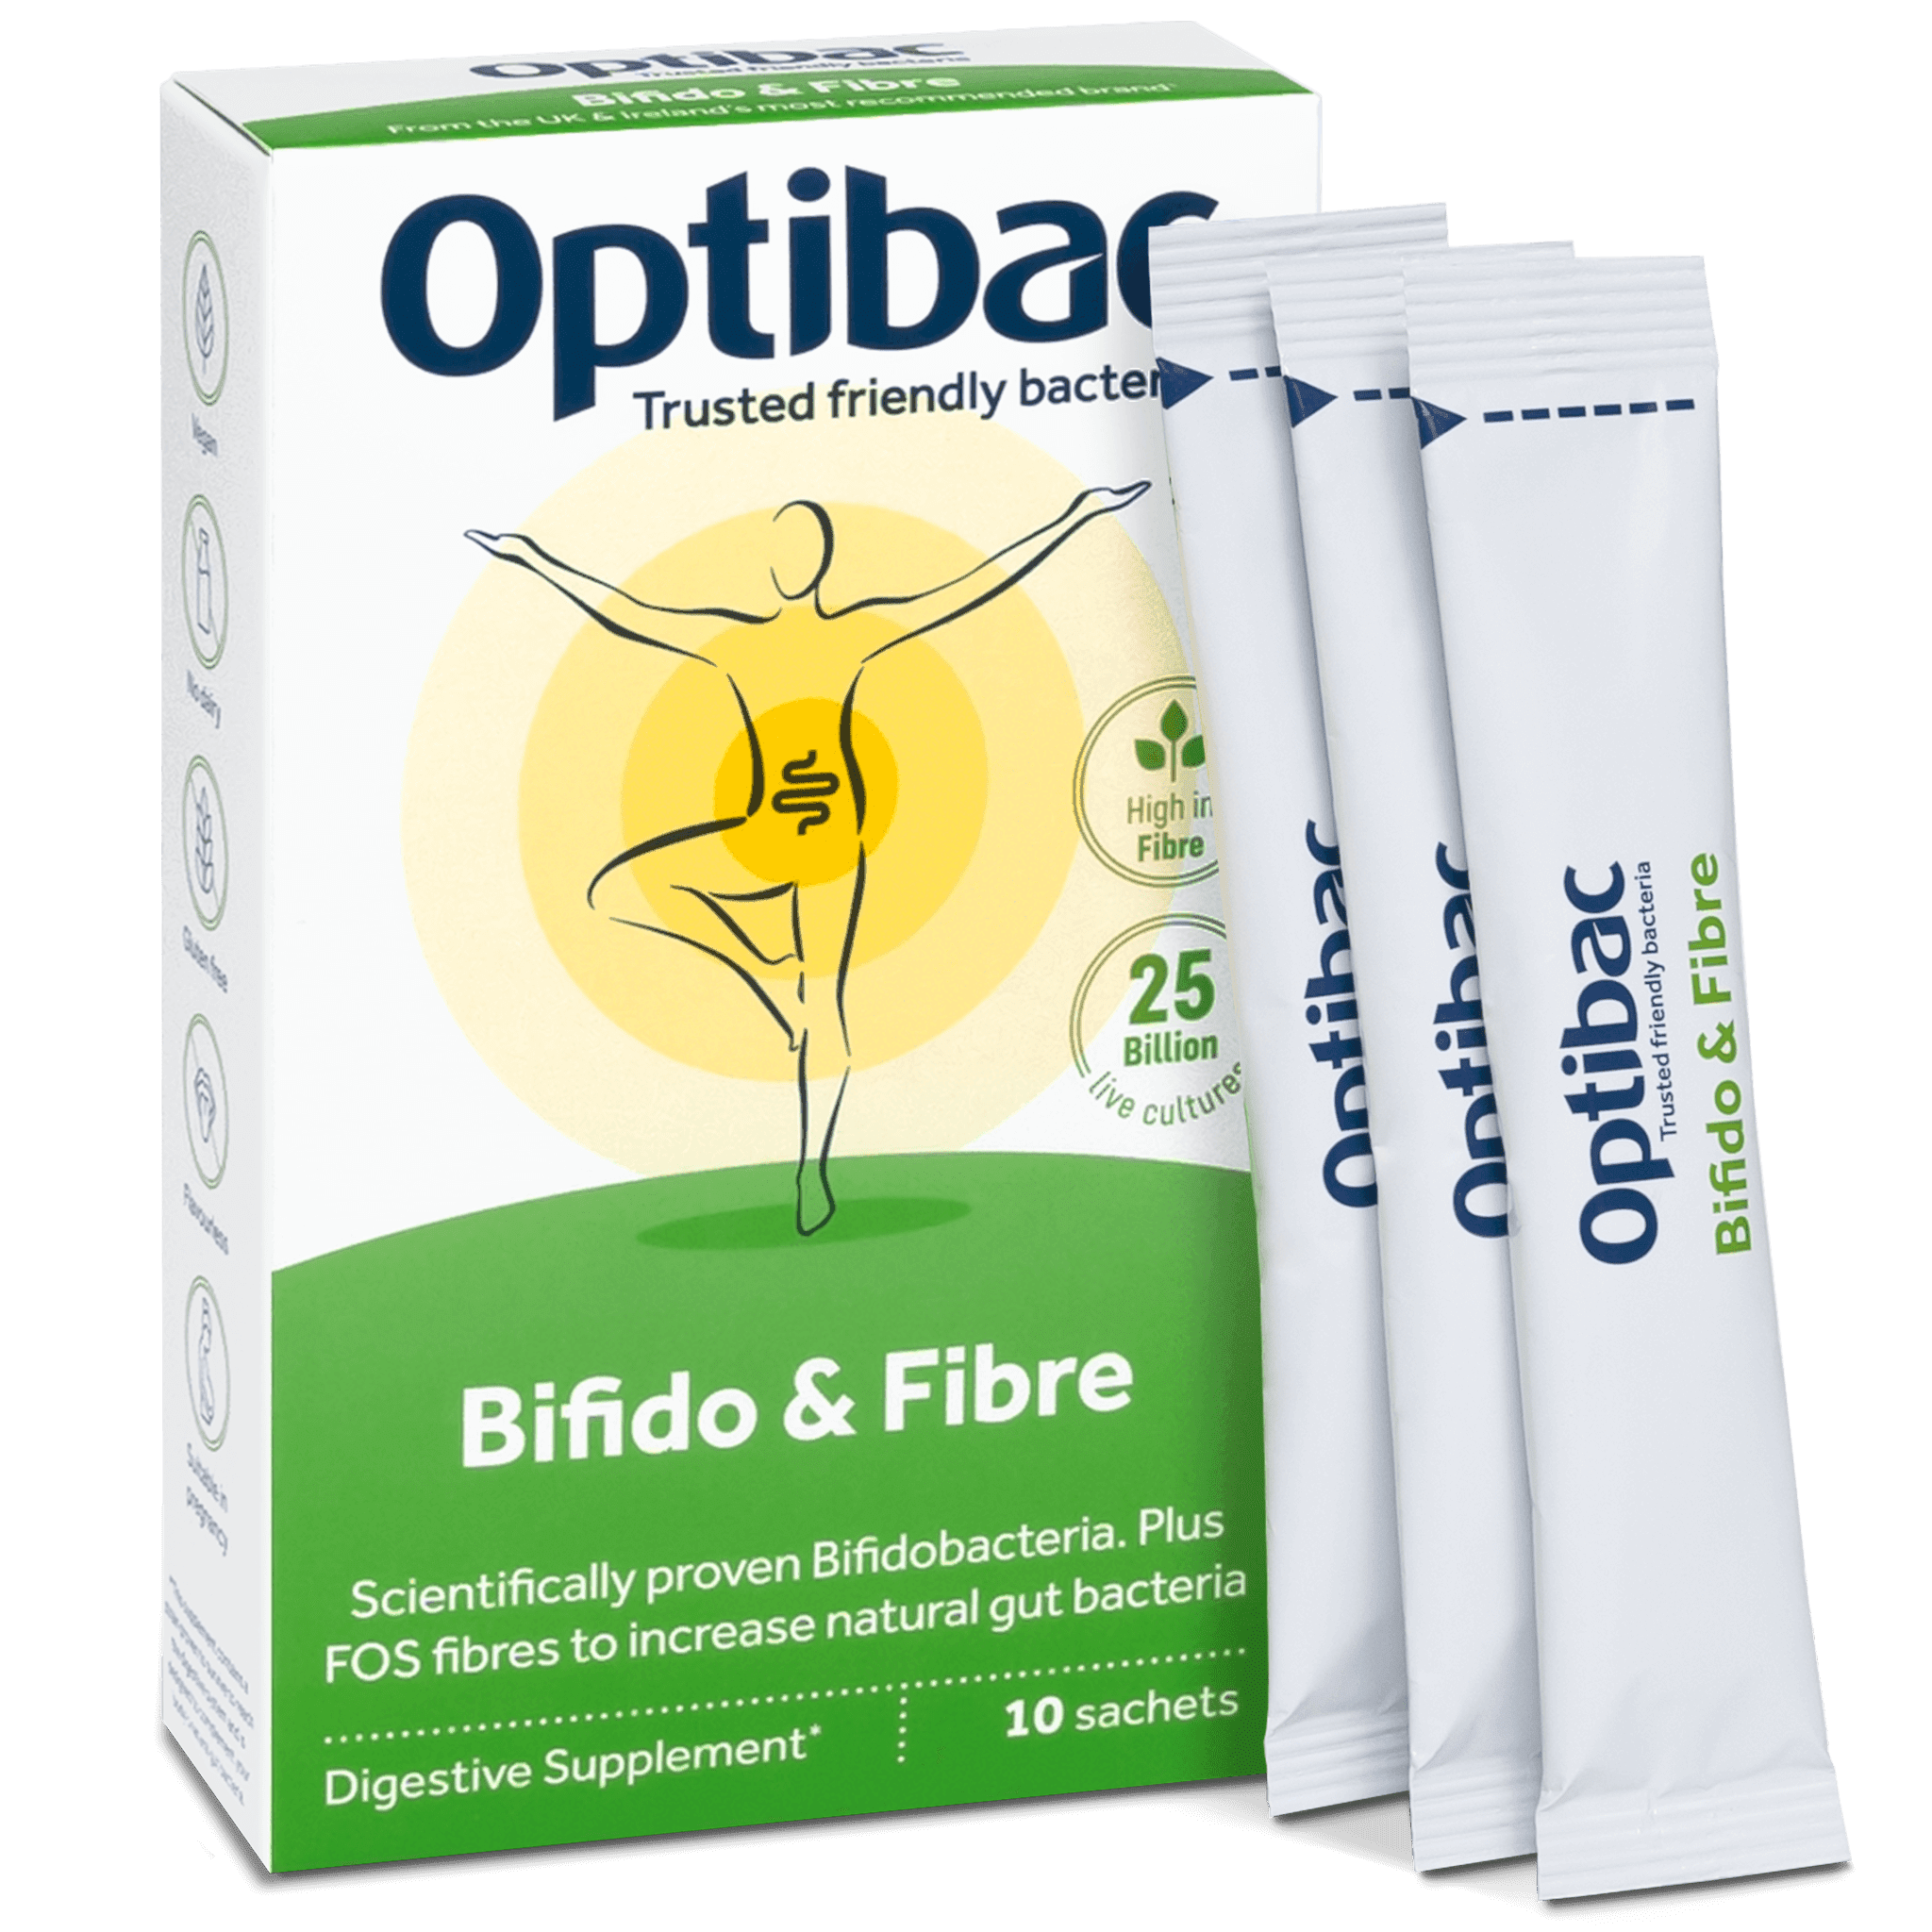 Optibac Probiotics Bifido & Fibre (10 sachets) pack contents